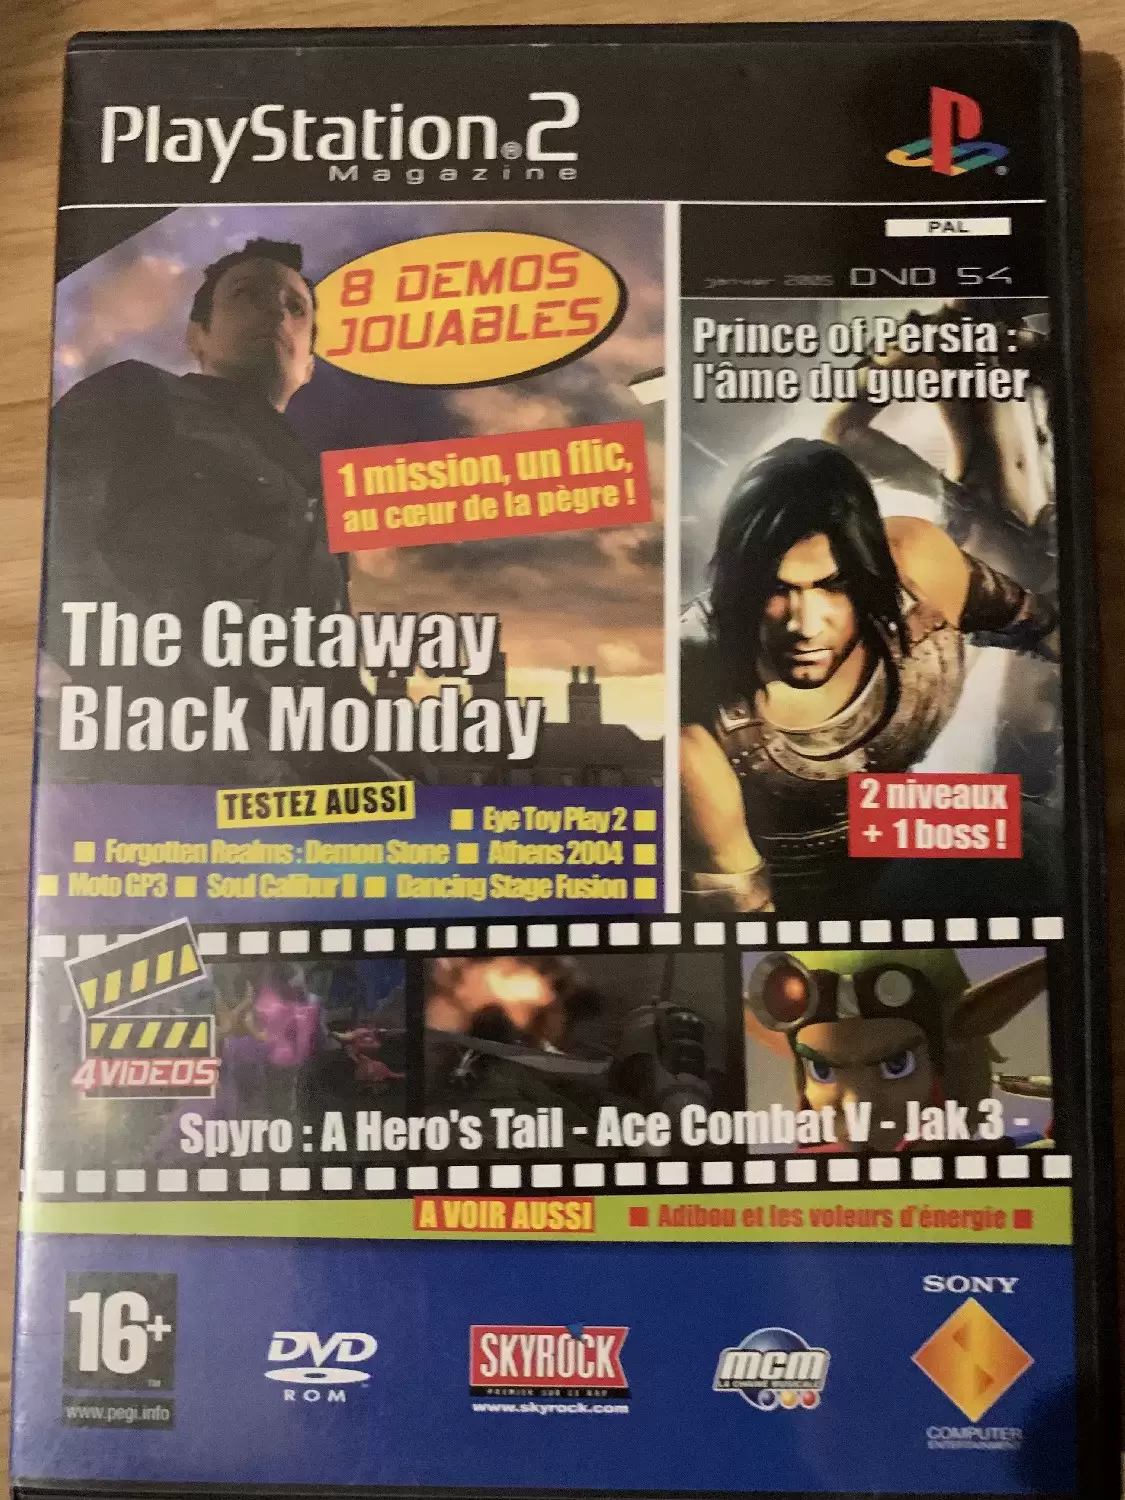 Jeux PS2 - Playstation 2 magazine janvier 2005